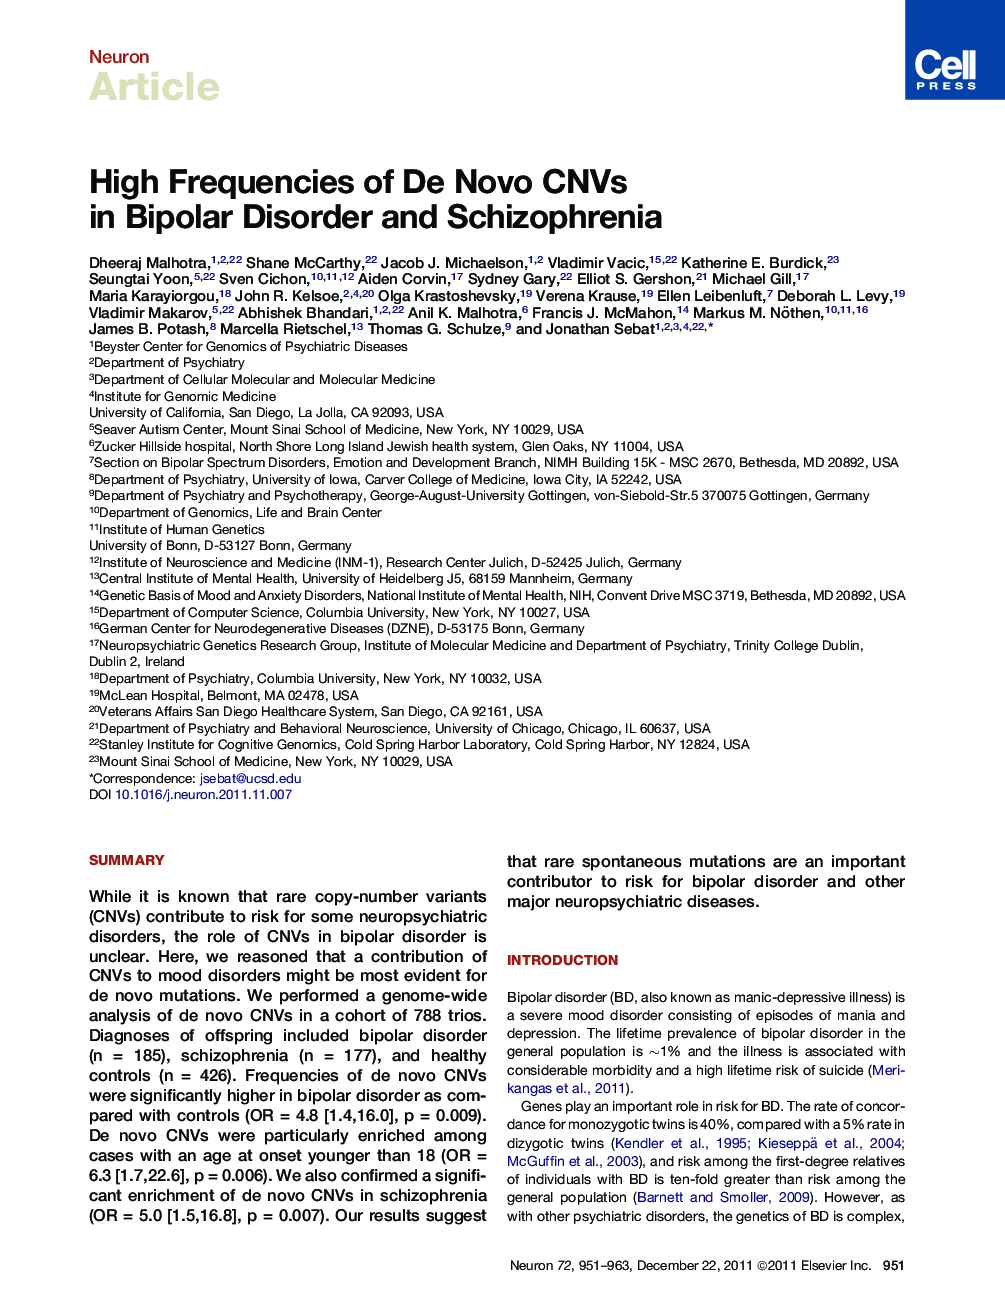 High Frequencies of De Novo CNVs in Bipolar Disorder and Schizophrenia